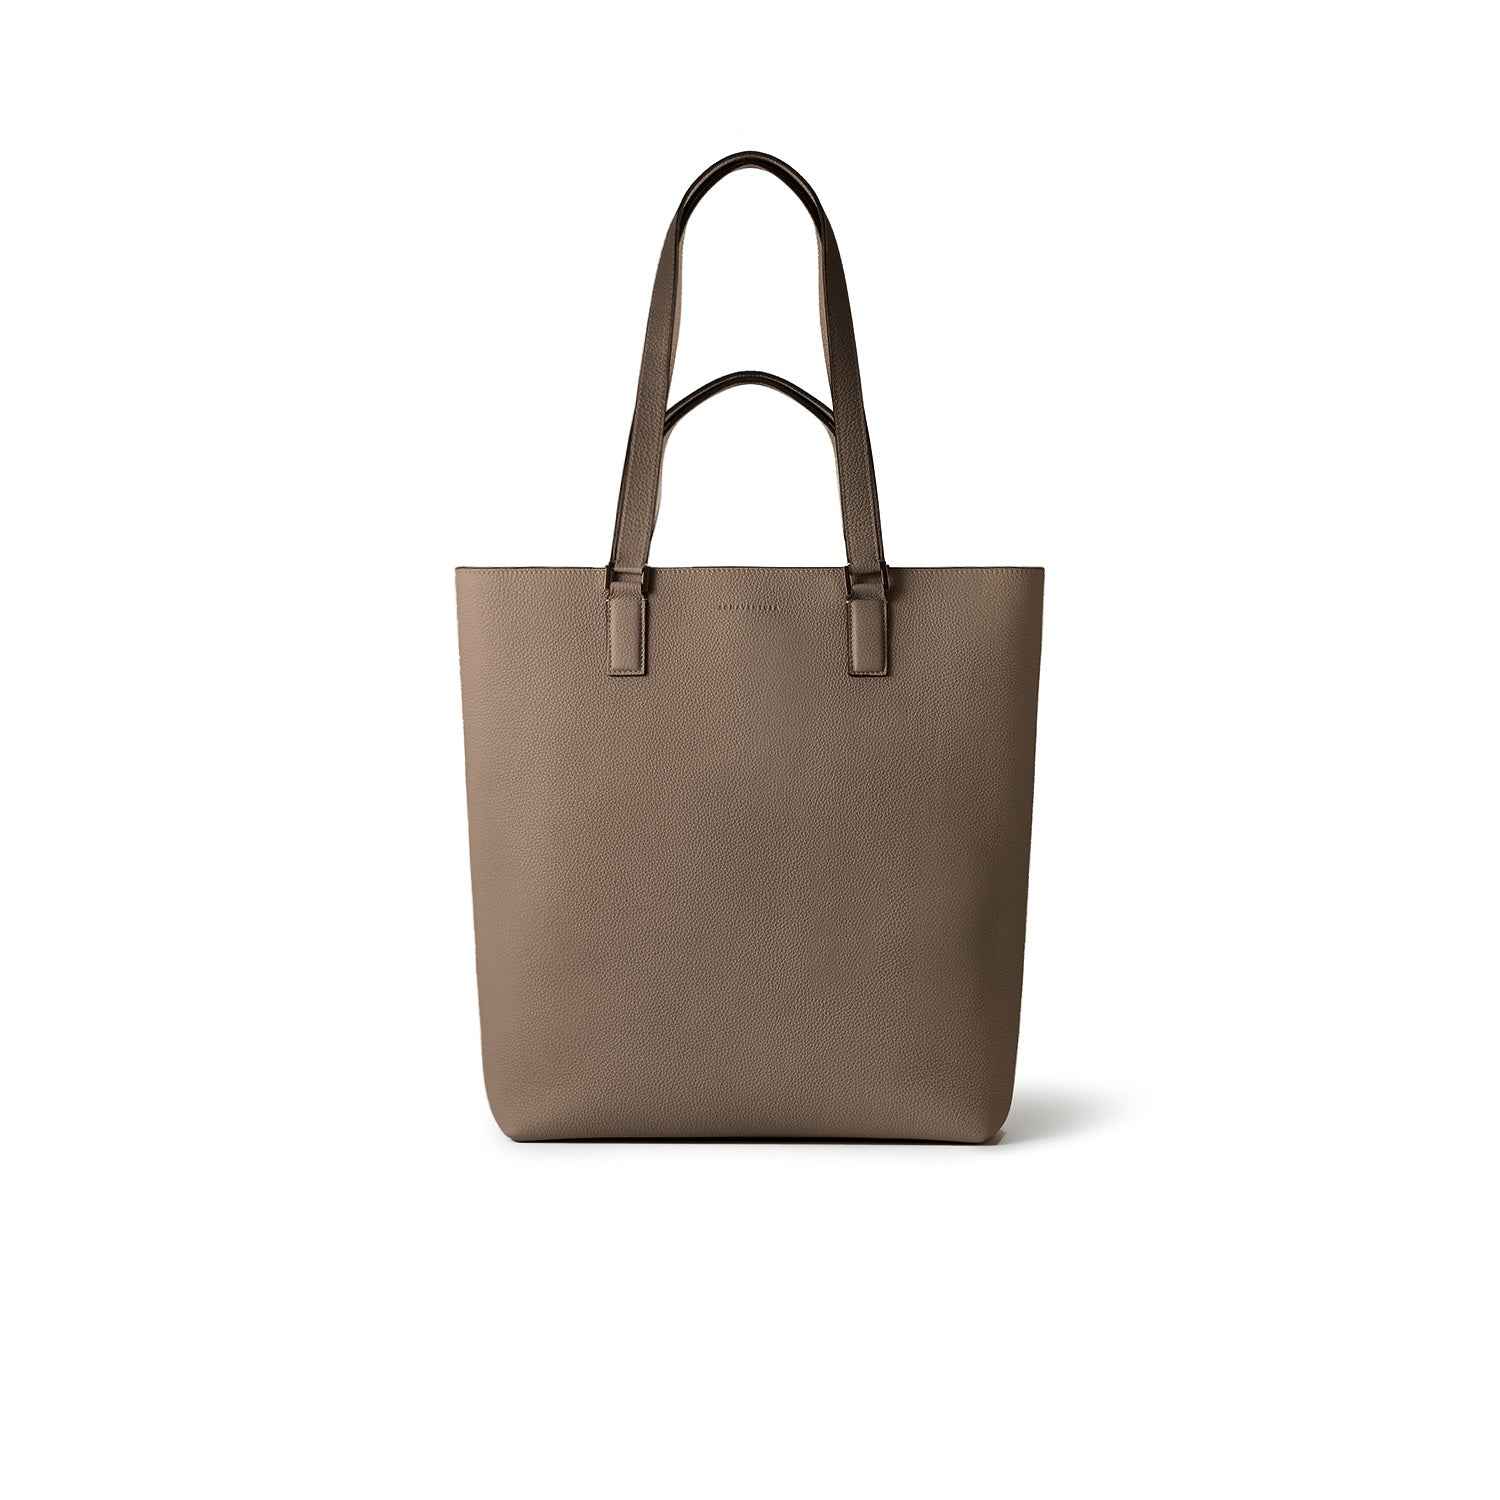 上質なレザーのメンズバッグ – イタリア(ミラノ)発の高級革製品の通販